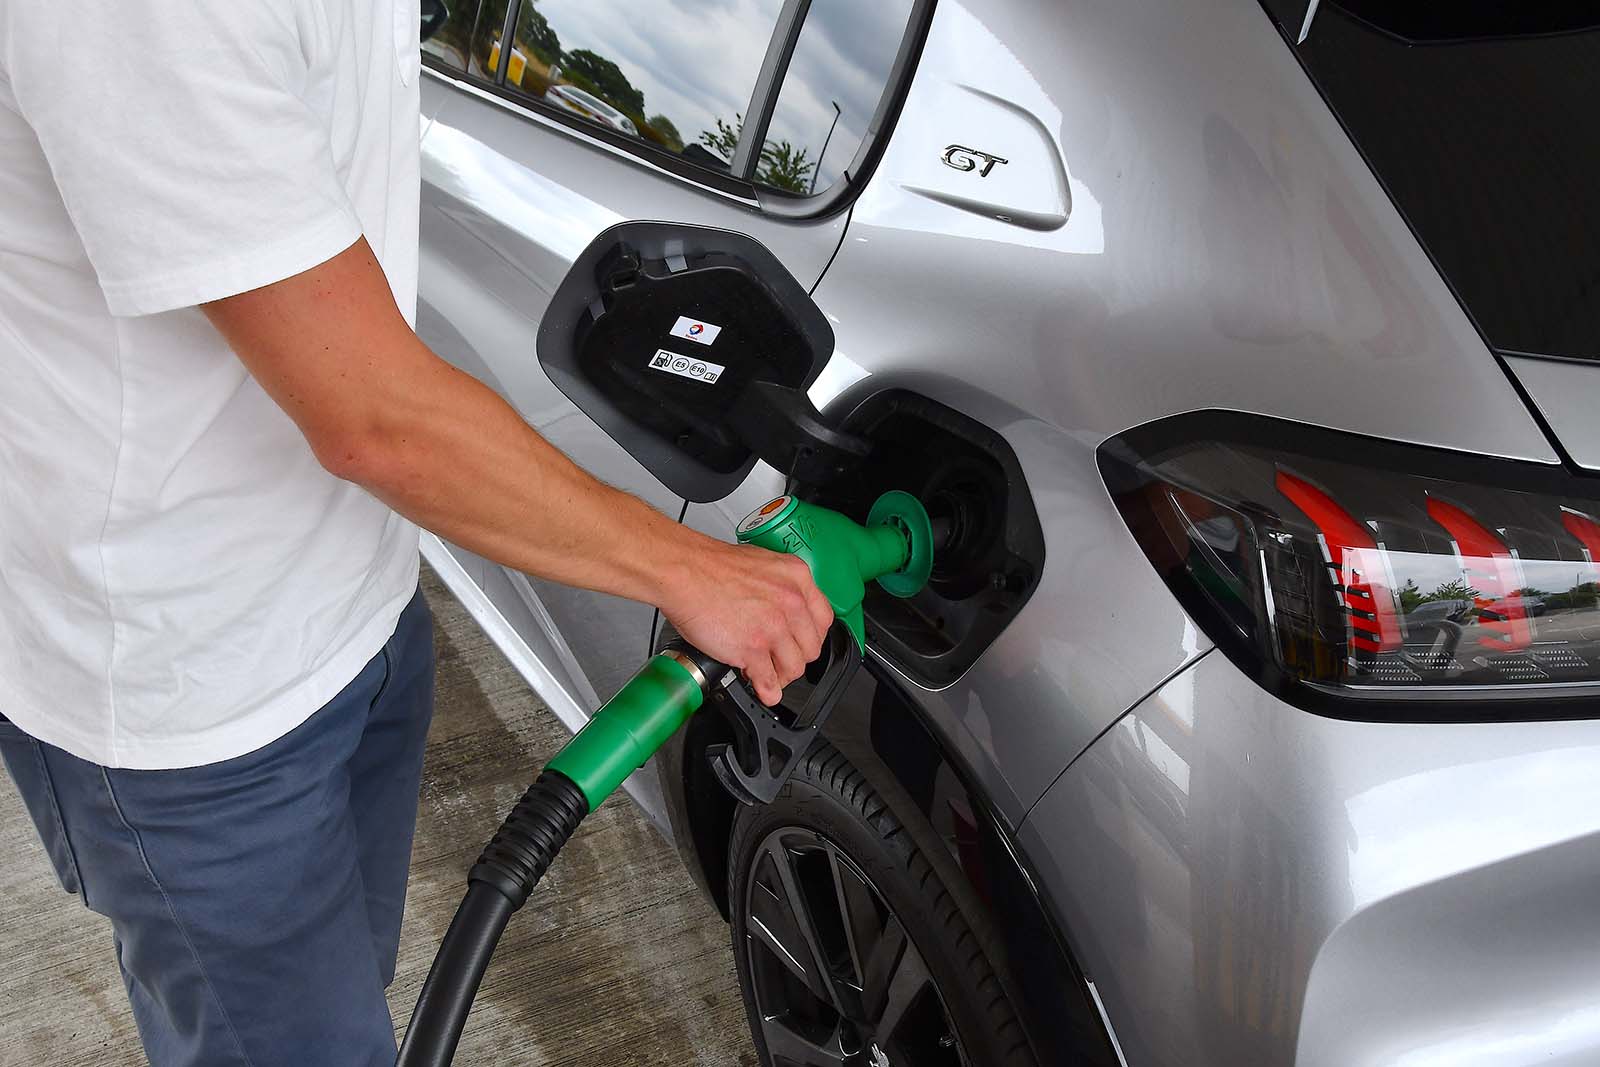 Petrol drops below 145p per litre amid fuel price discrepancy